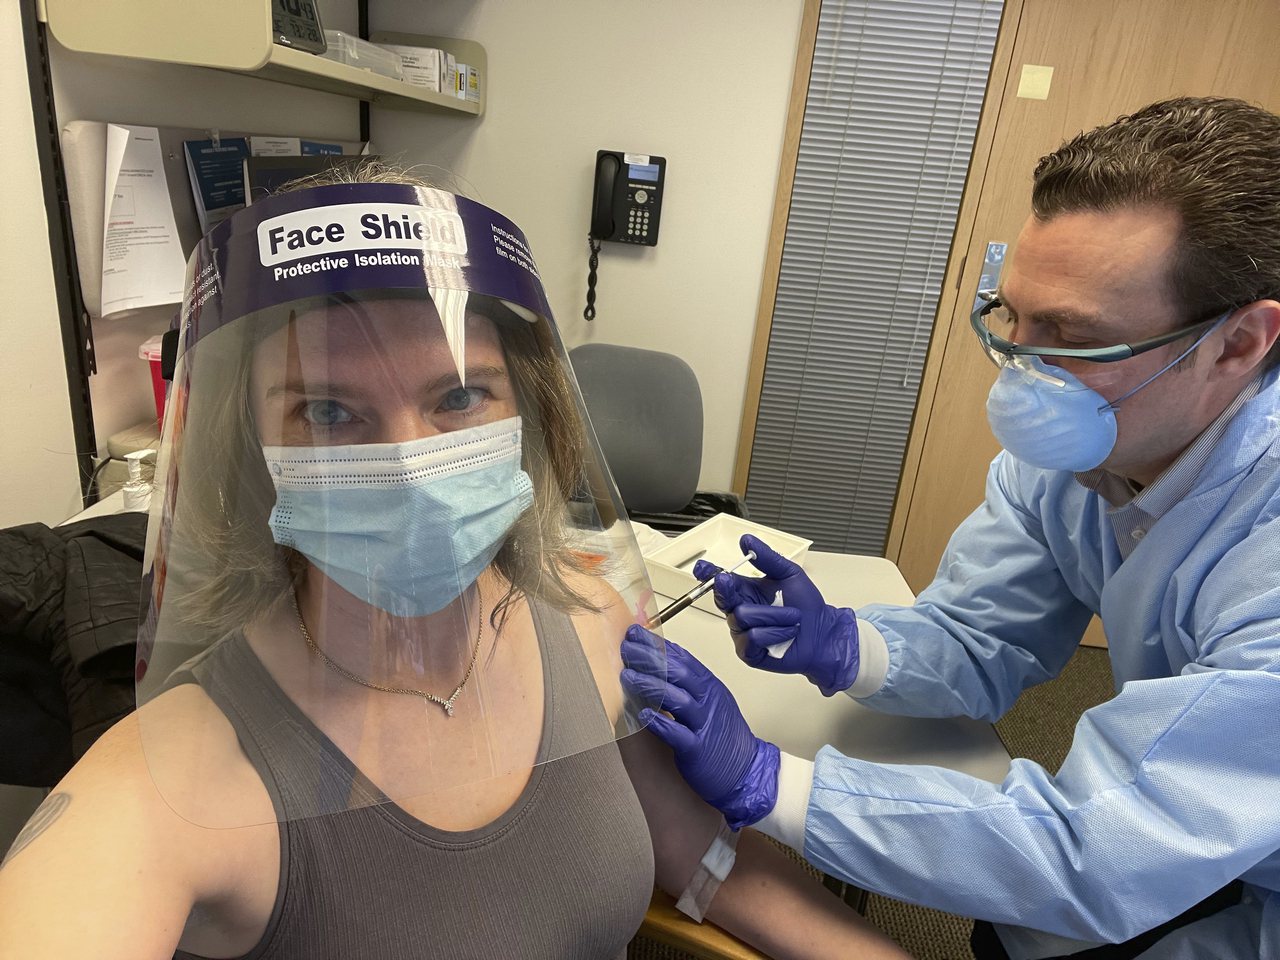 西雅圖居民哈勒在去年9月是第一位接受莫德納疫苗臨床實驗的志願者。今年3月，她再次成為第一位接受注射第三劑莫德納疫苗的志願者，她表示反應良好。(美聯社)